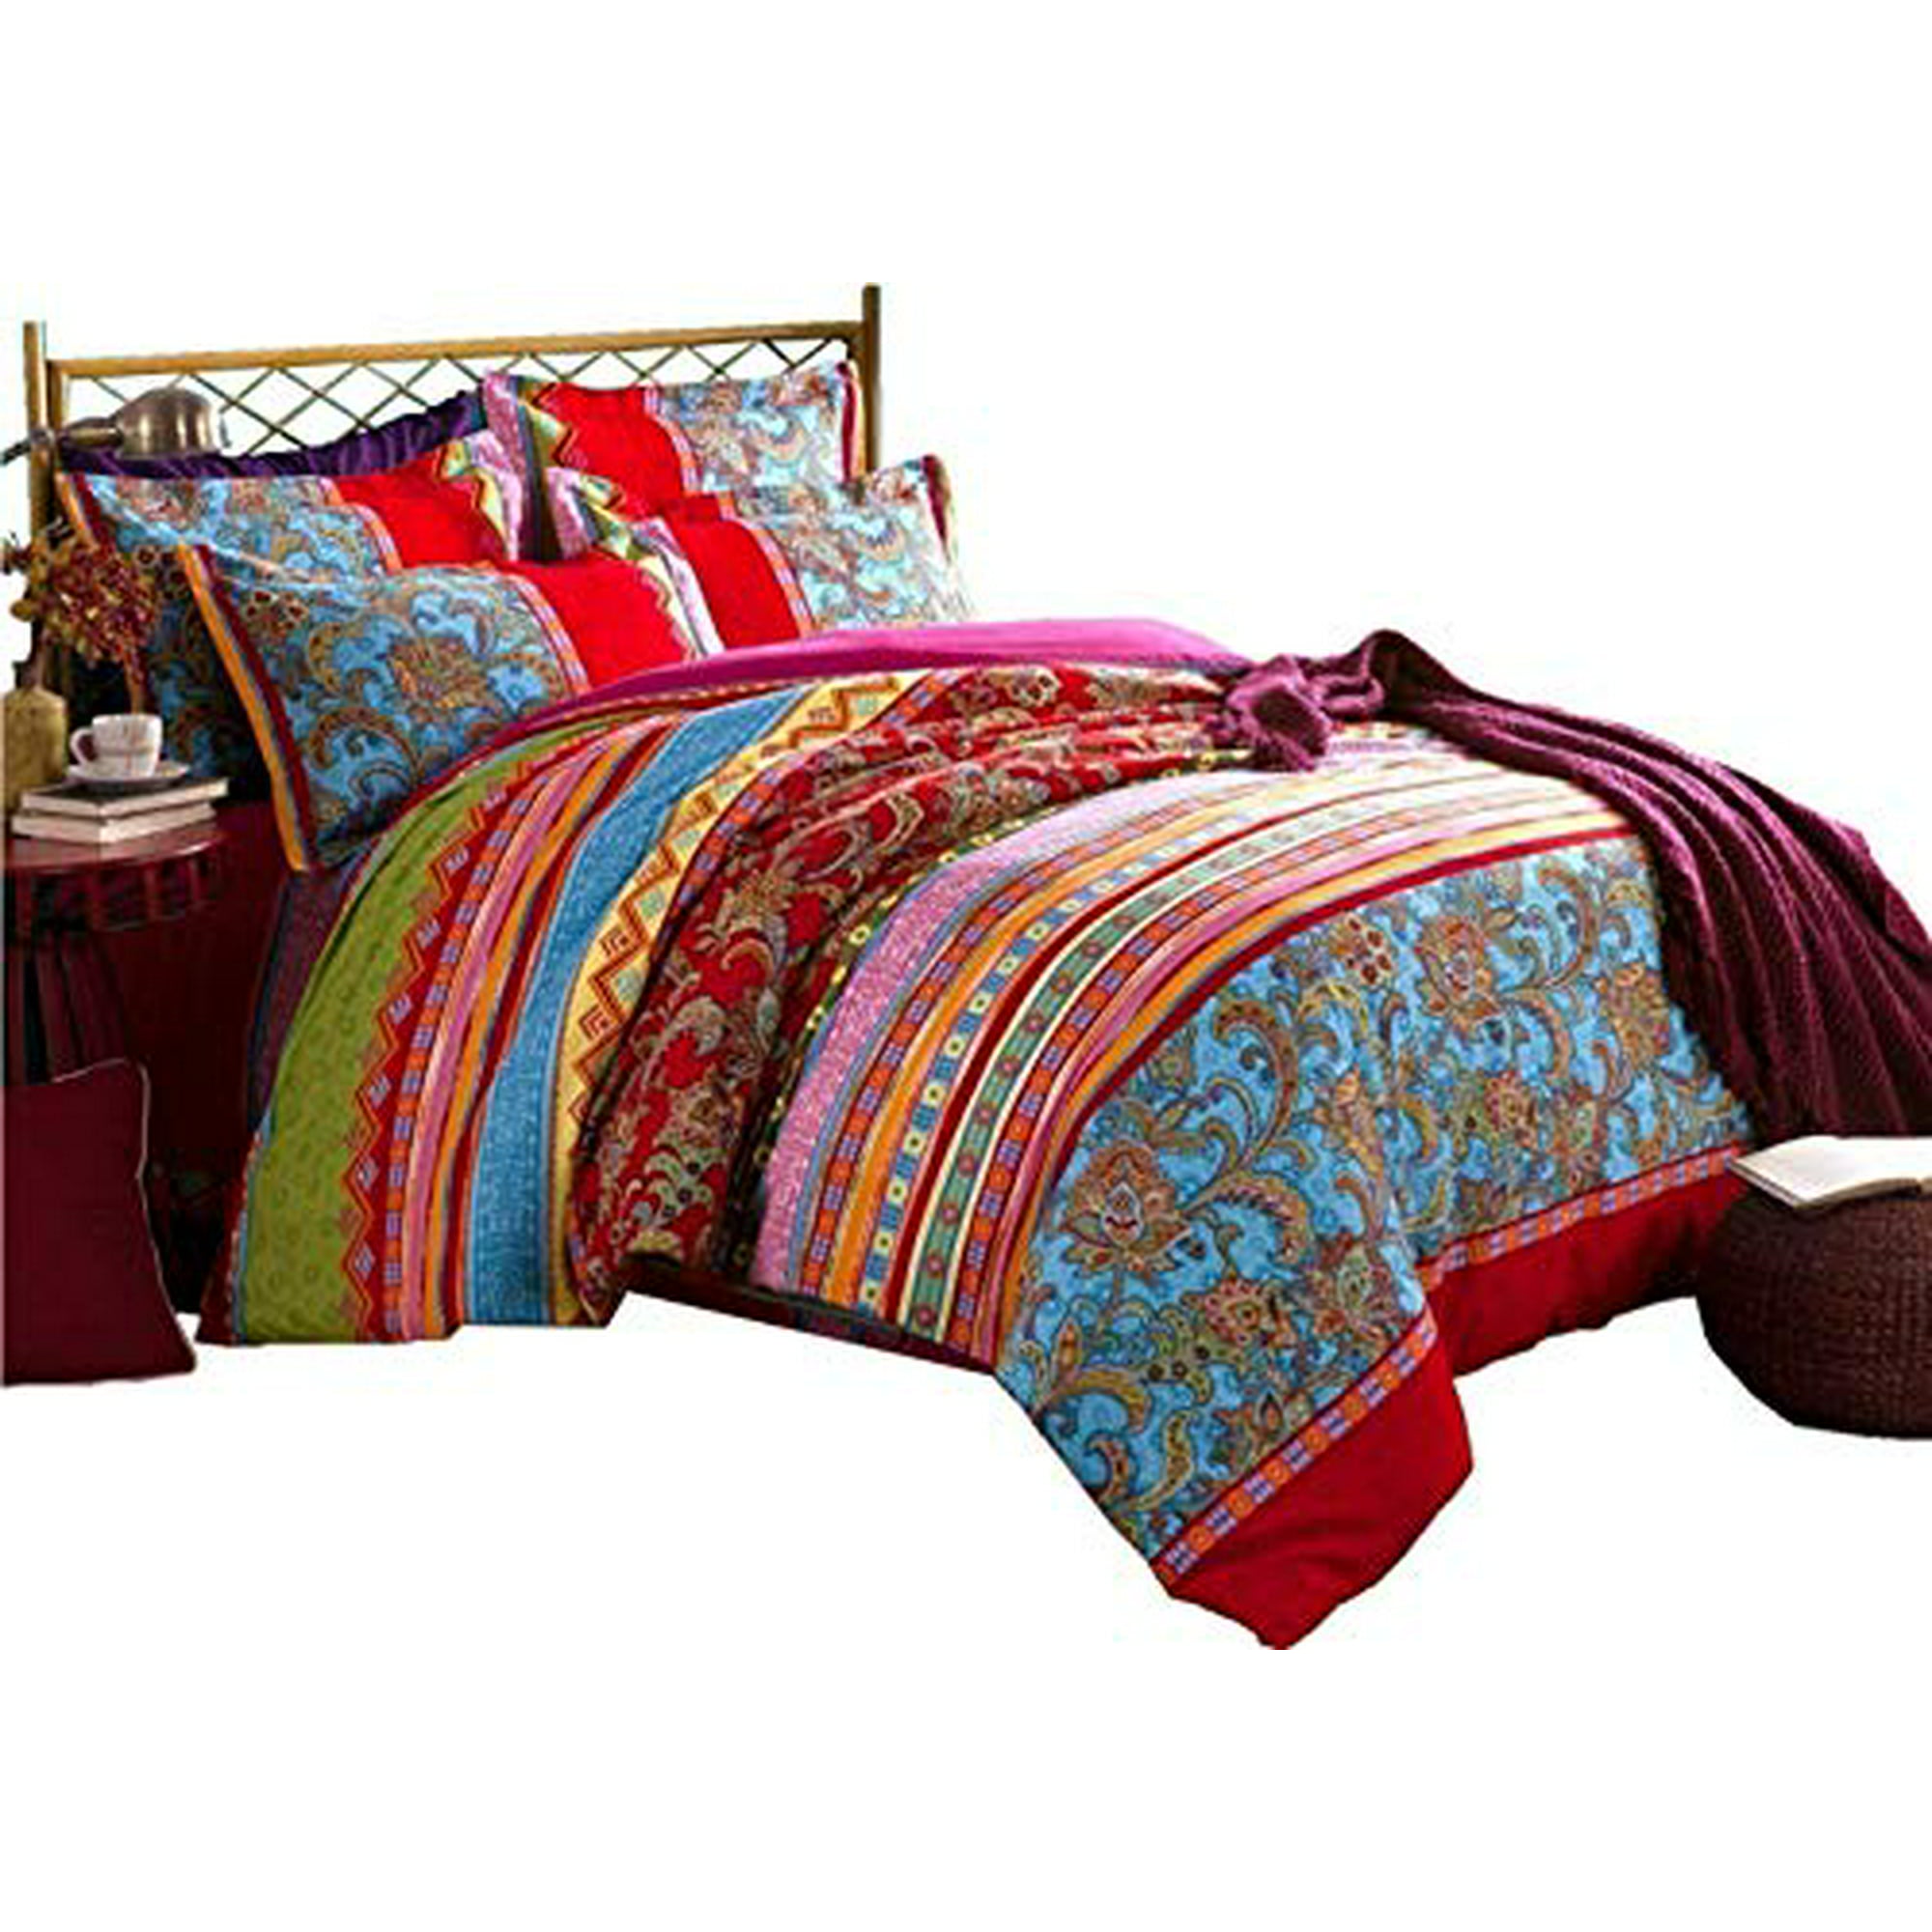 Lelva Boho Style Bedding Set Bohemian, Boho Style Duvet Covers